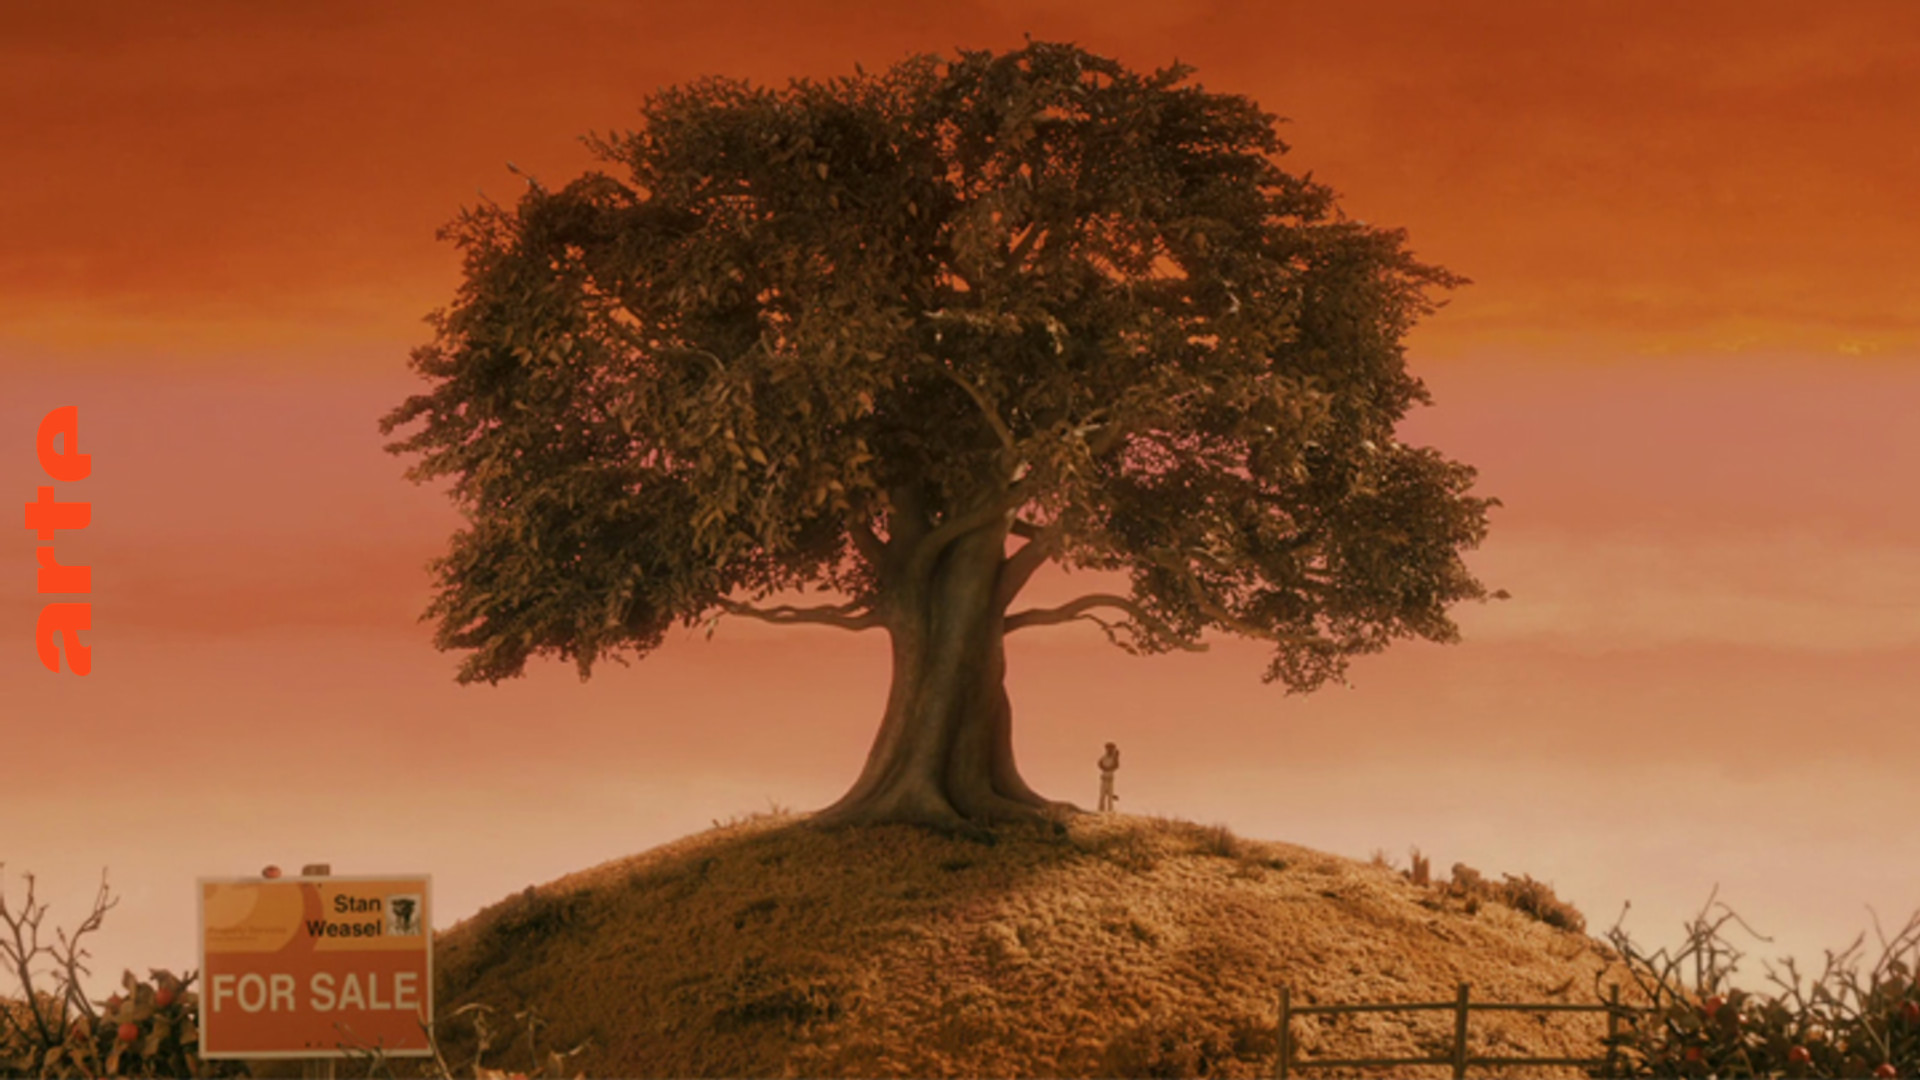 Der Baum im Film